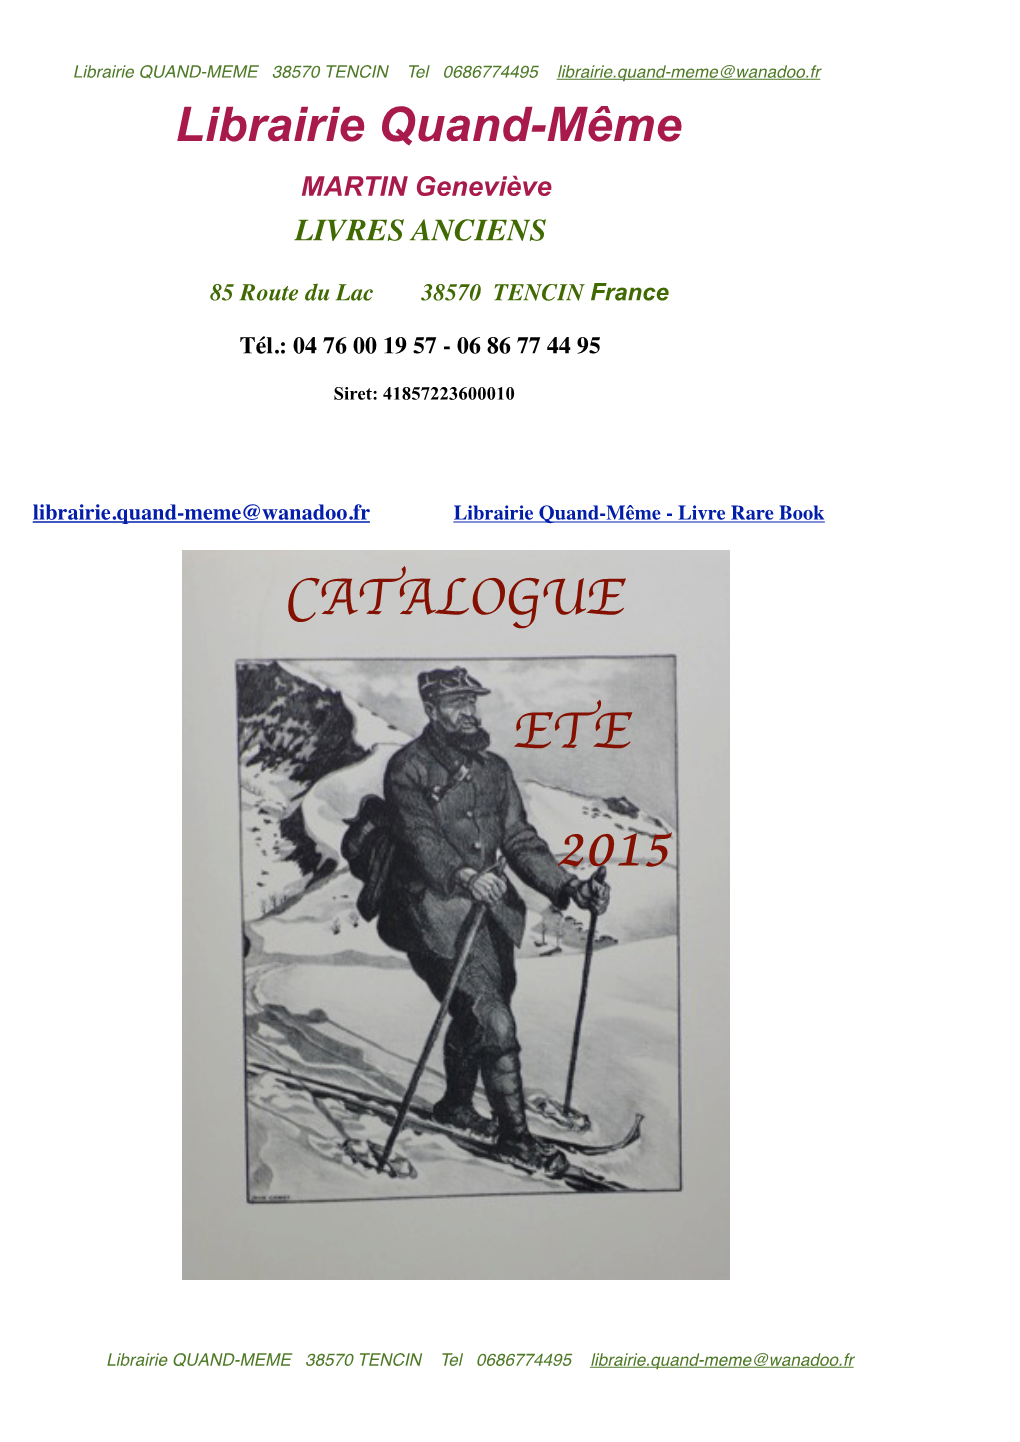 Catalogue ETE 2015